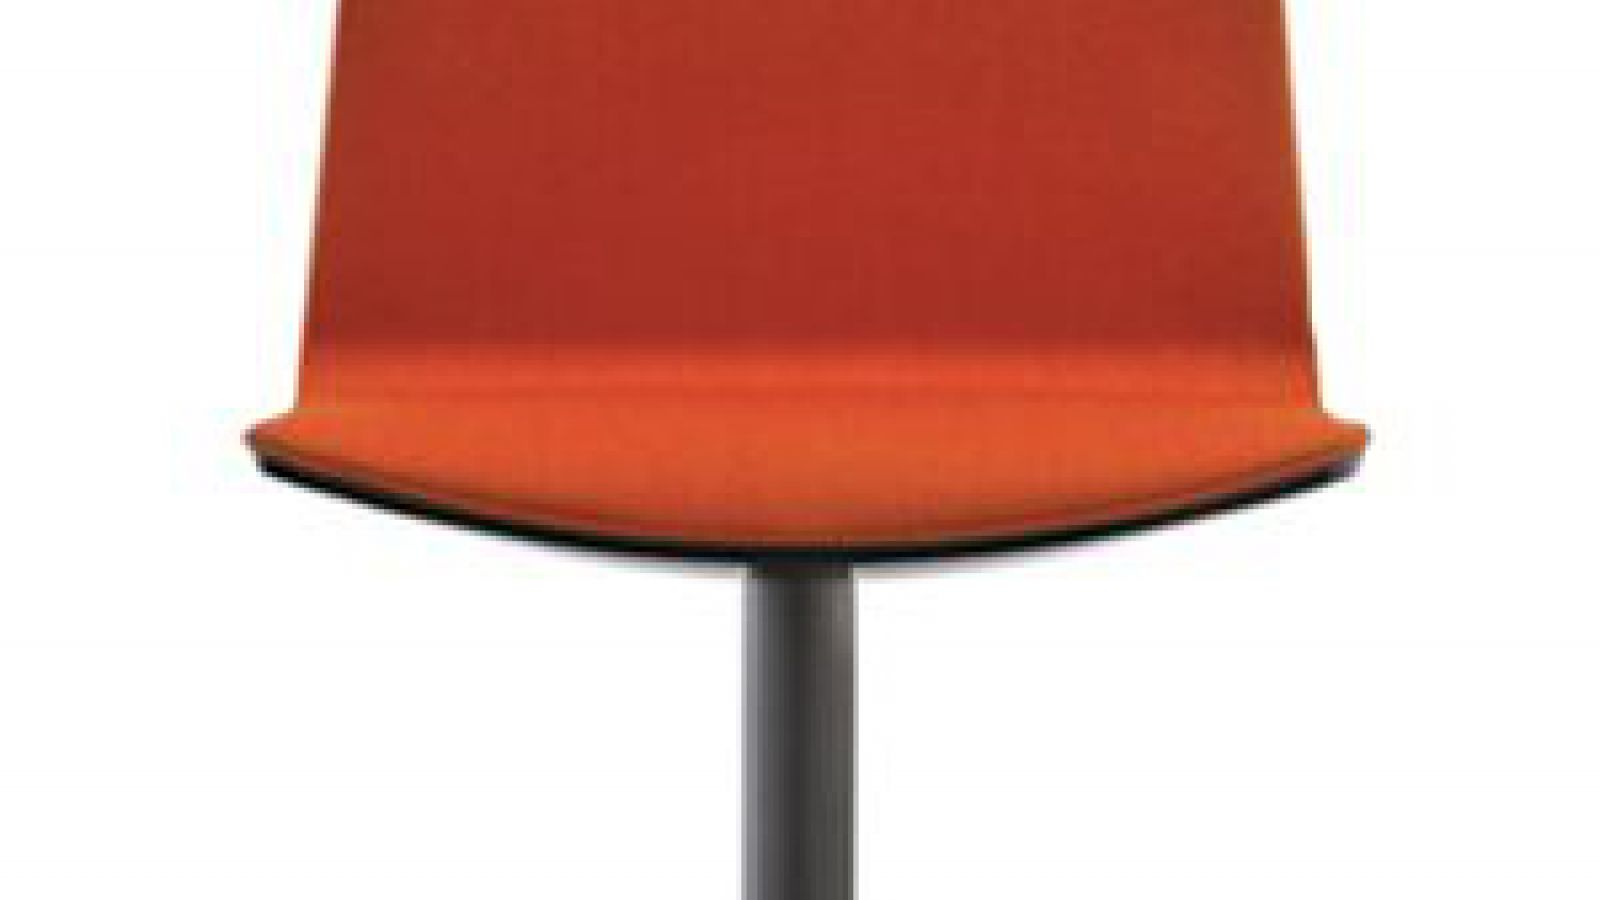 achat pedrali noa 727 chaise avec roulette plaza mobilier acier bureau  Fauteuils de bureau Pedrali